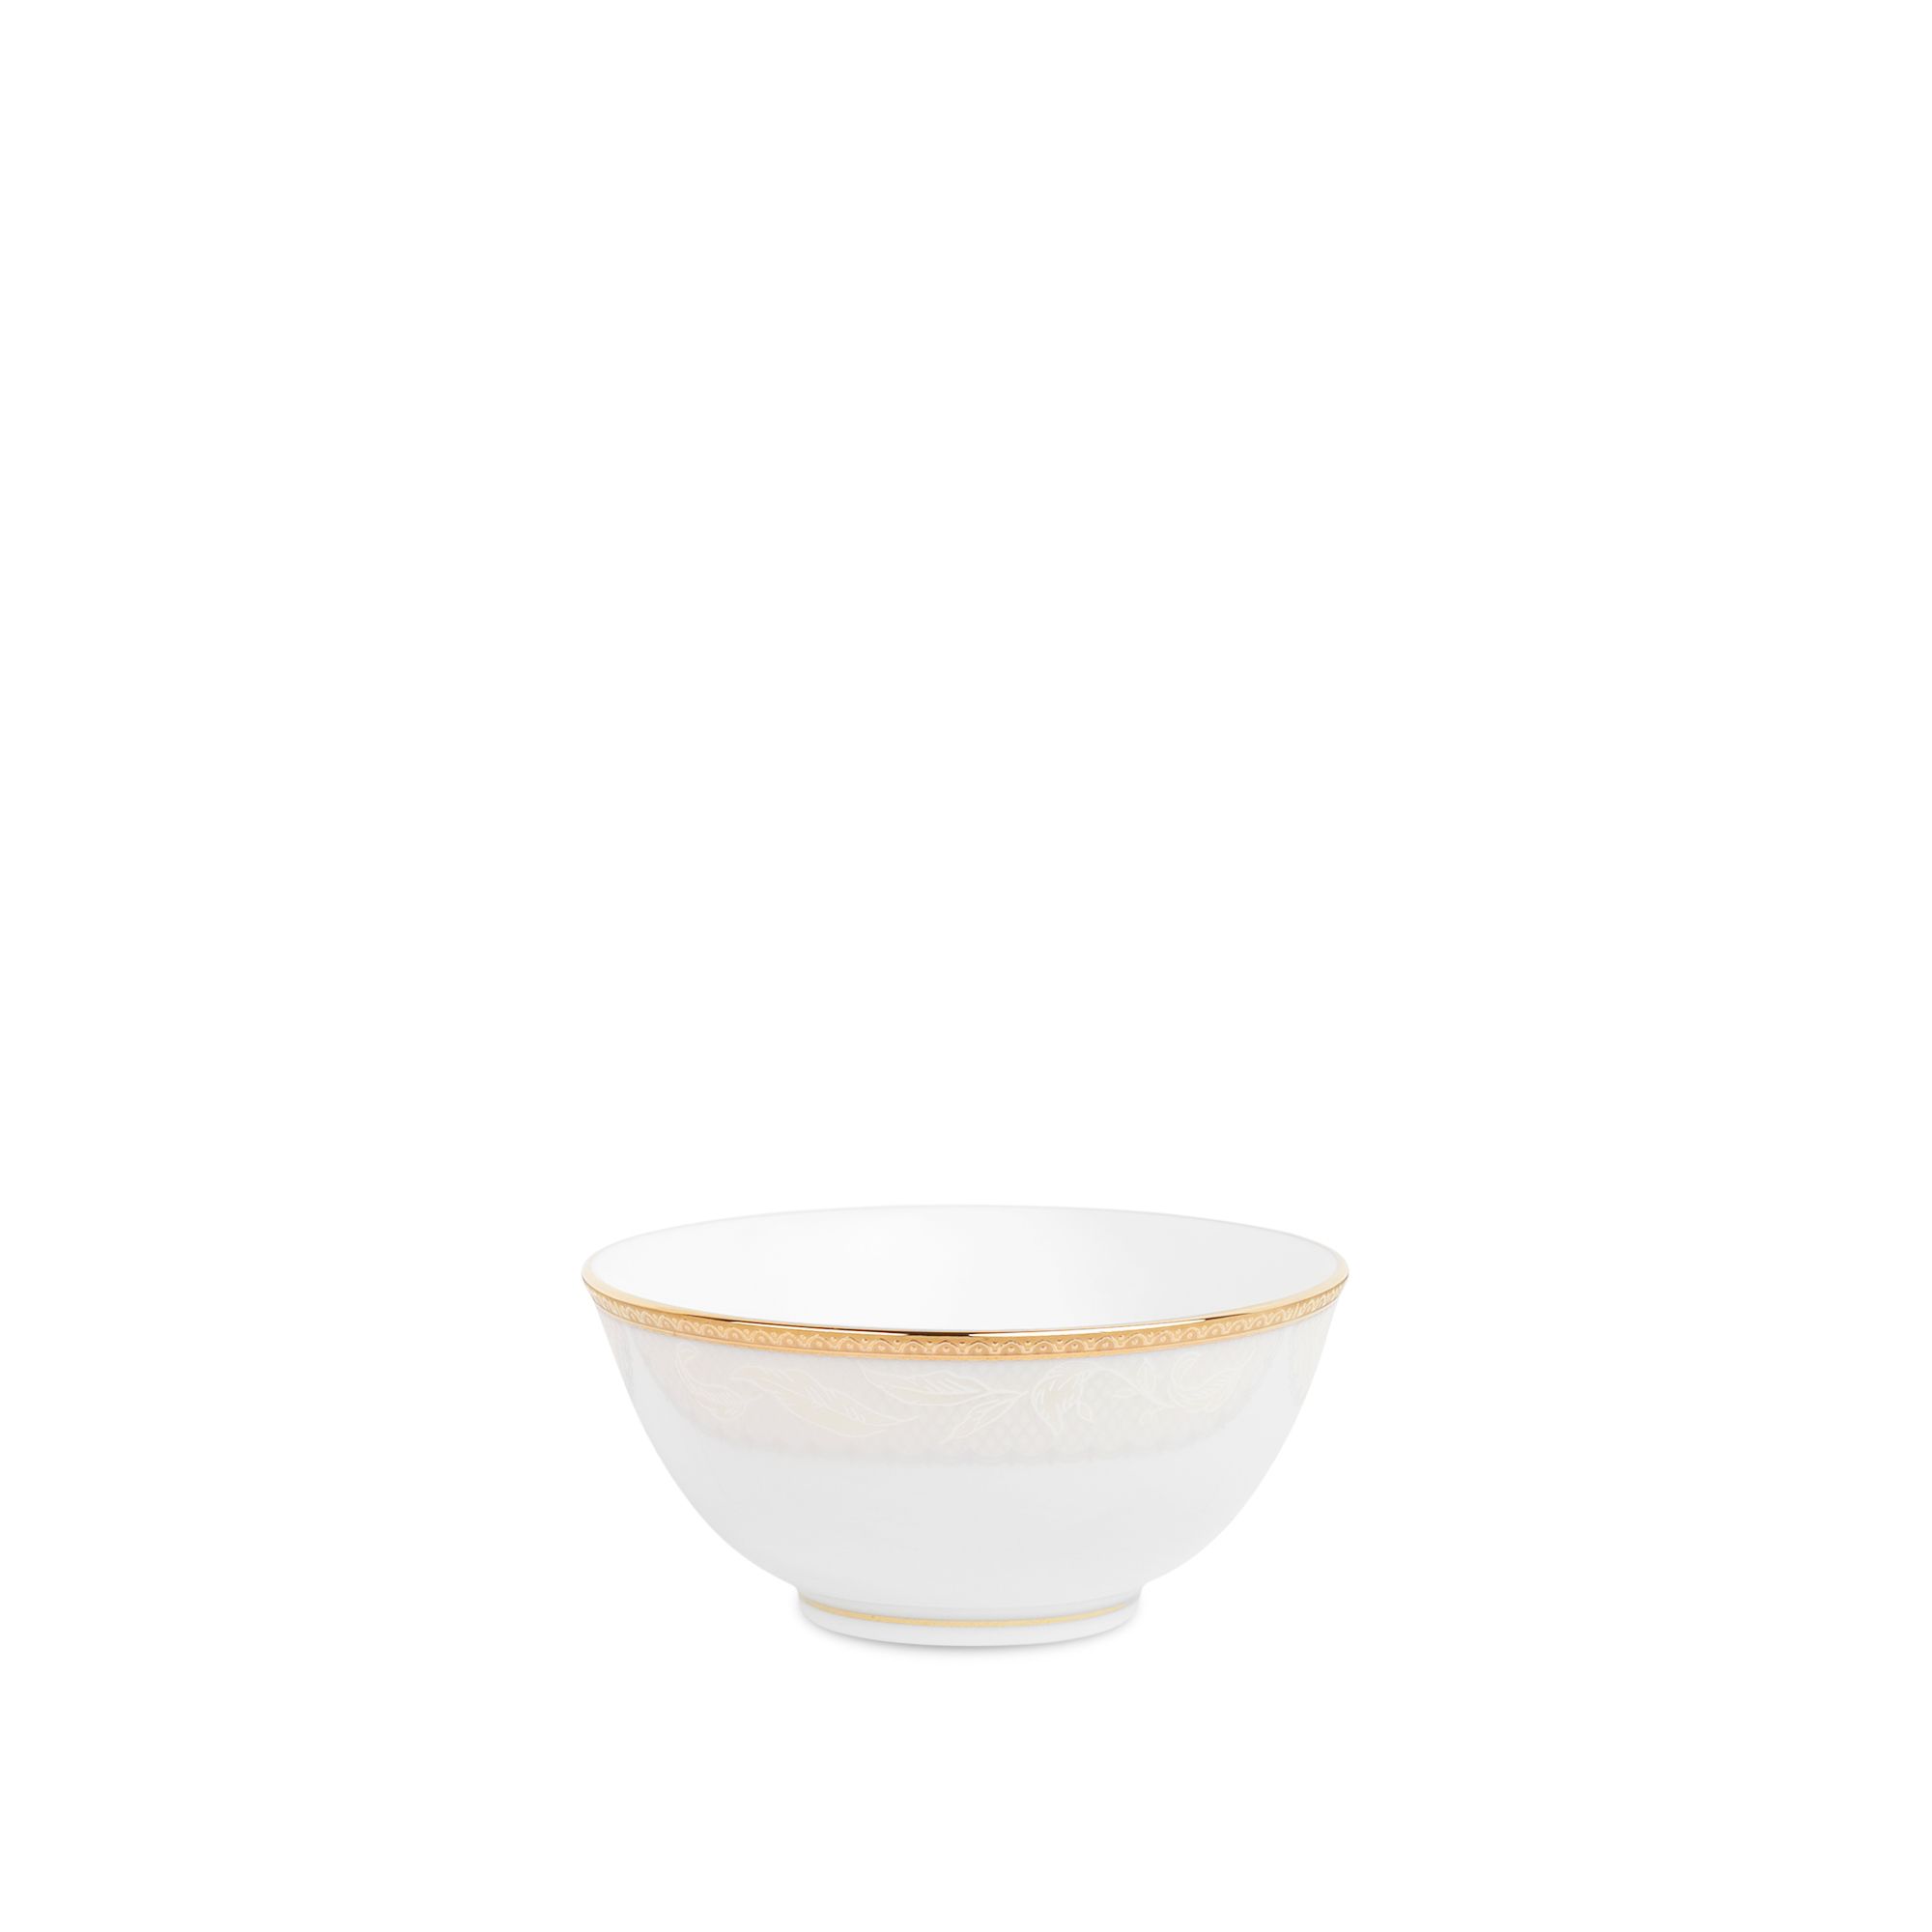  Chén ( bát ) ăn soup/đựng nước chấm đường kính 10,7cm 